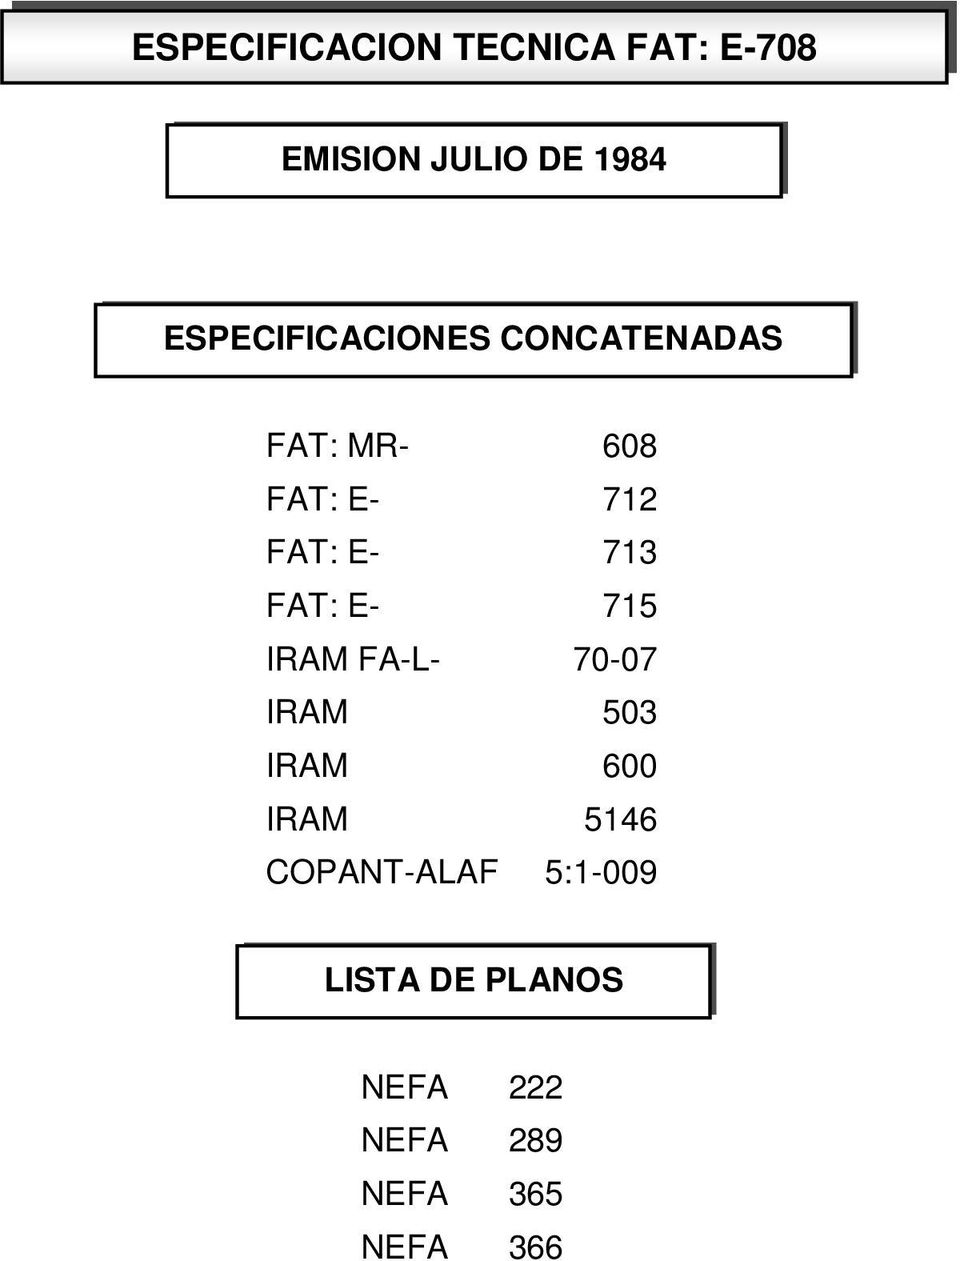 E- 713 FAT: E- 715 IRAM FA-L- 70-07 IRAM 600 IRAM 5146